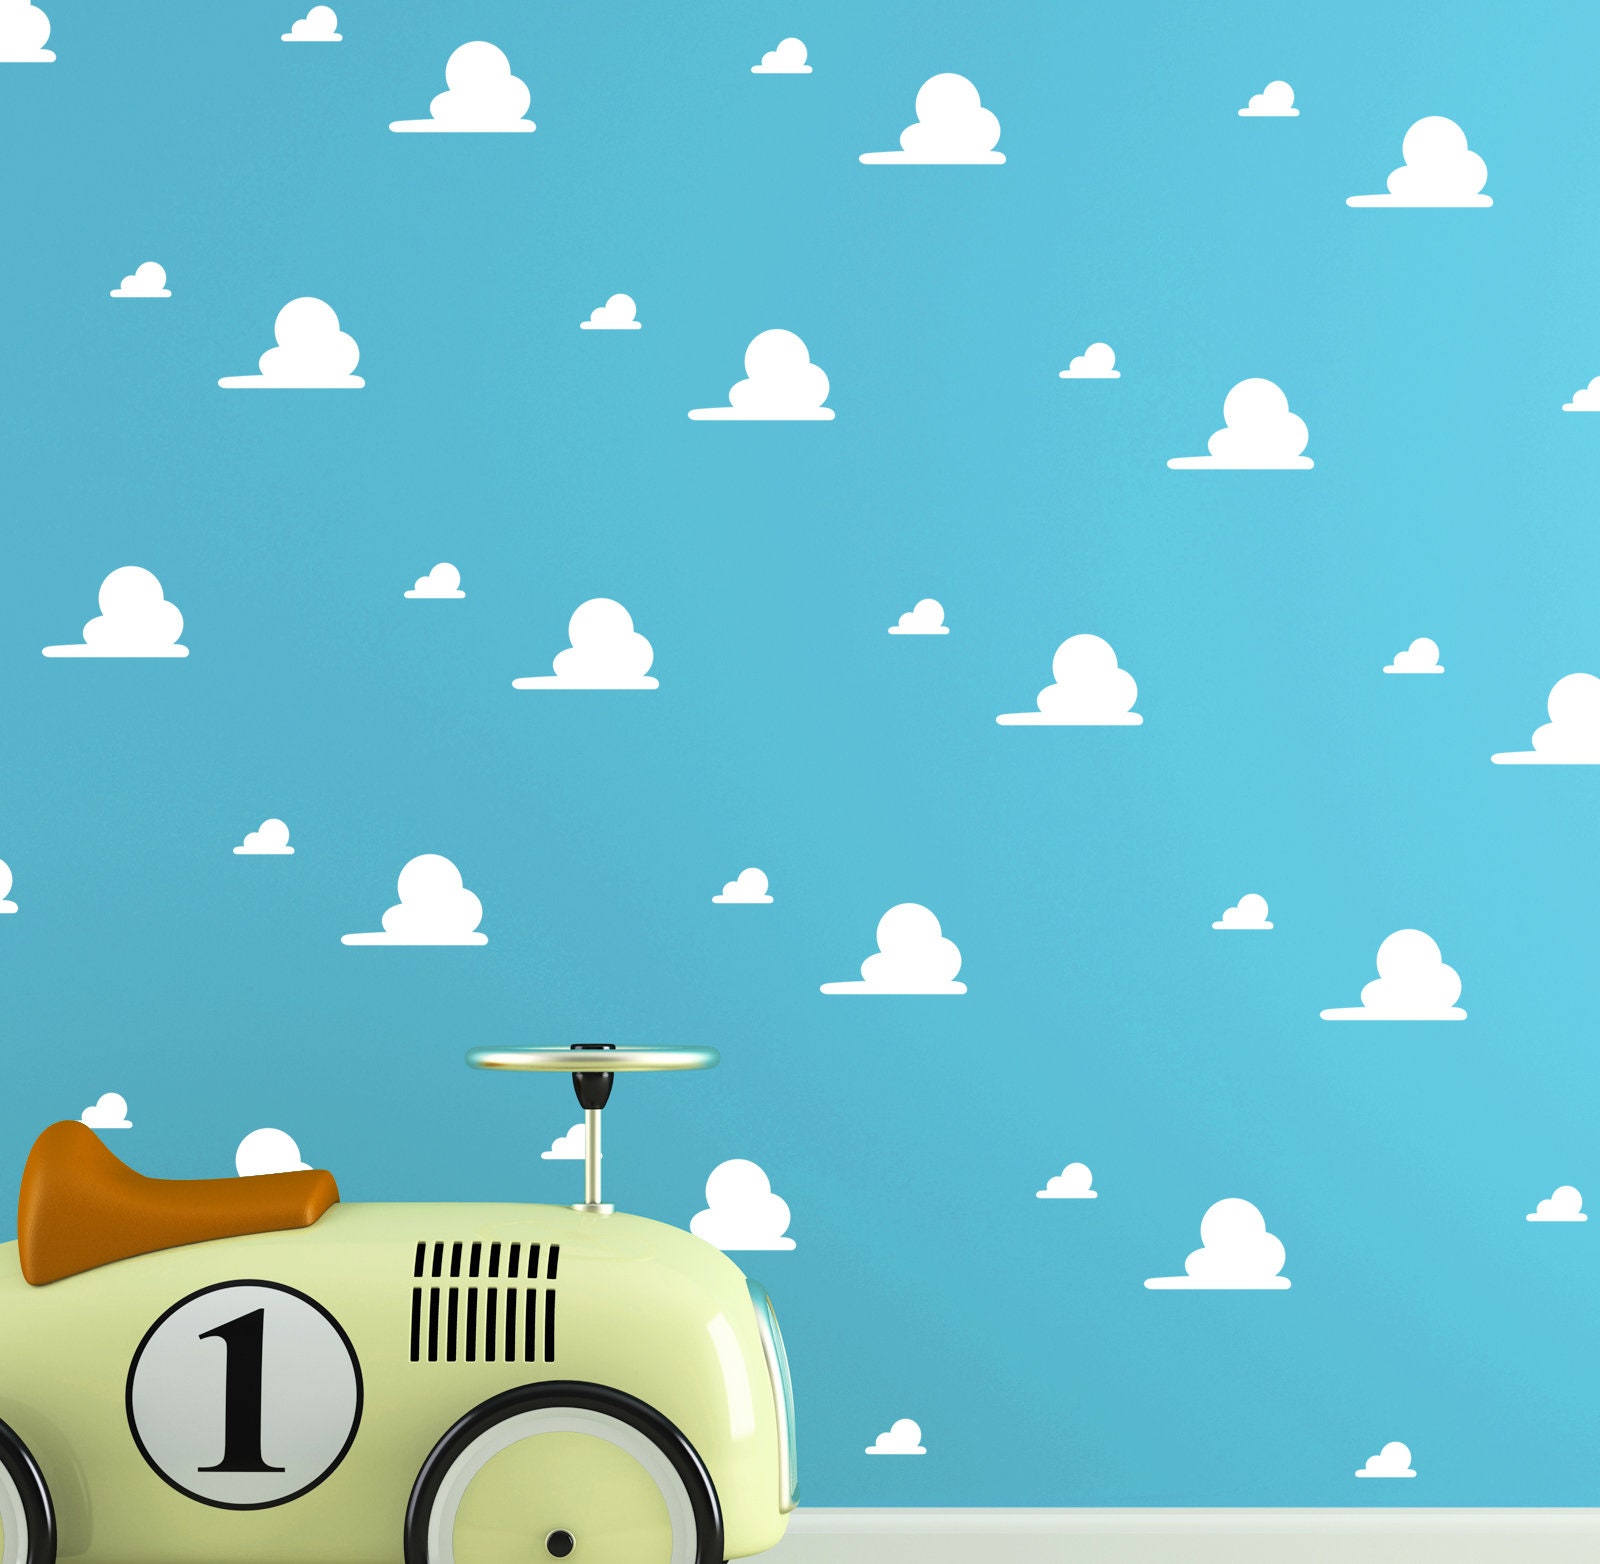 47+] Toy Story Cloud Wallpaper - WallpaperSafari